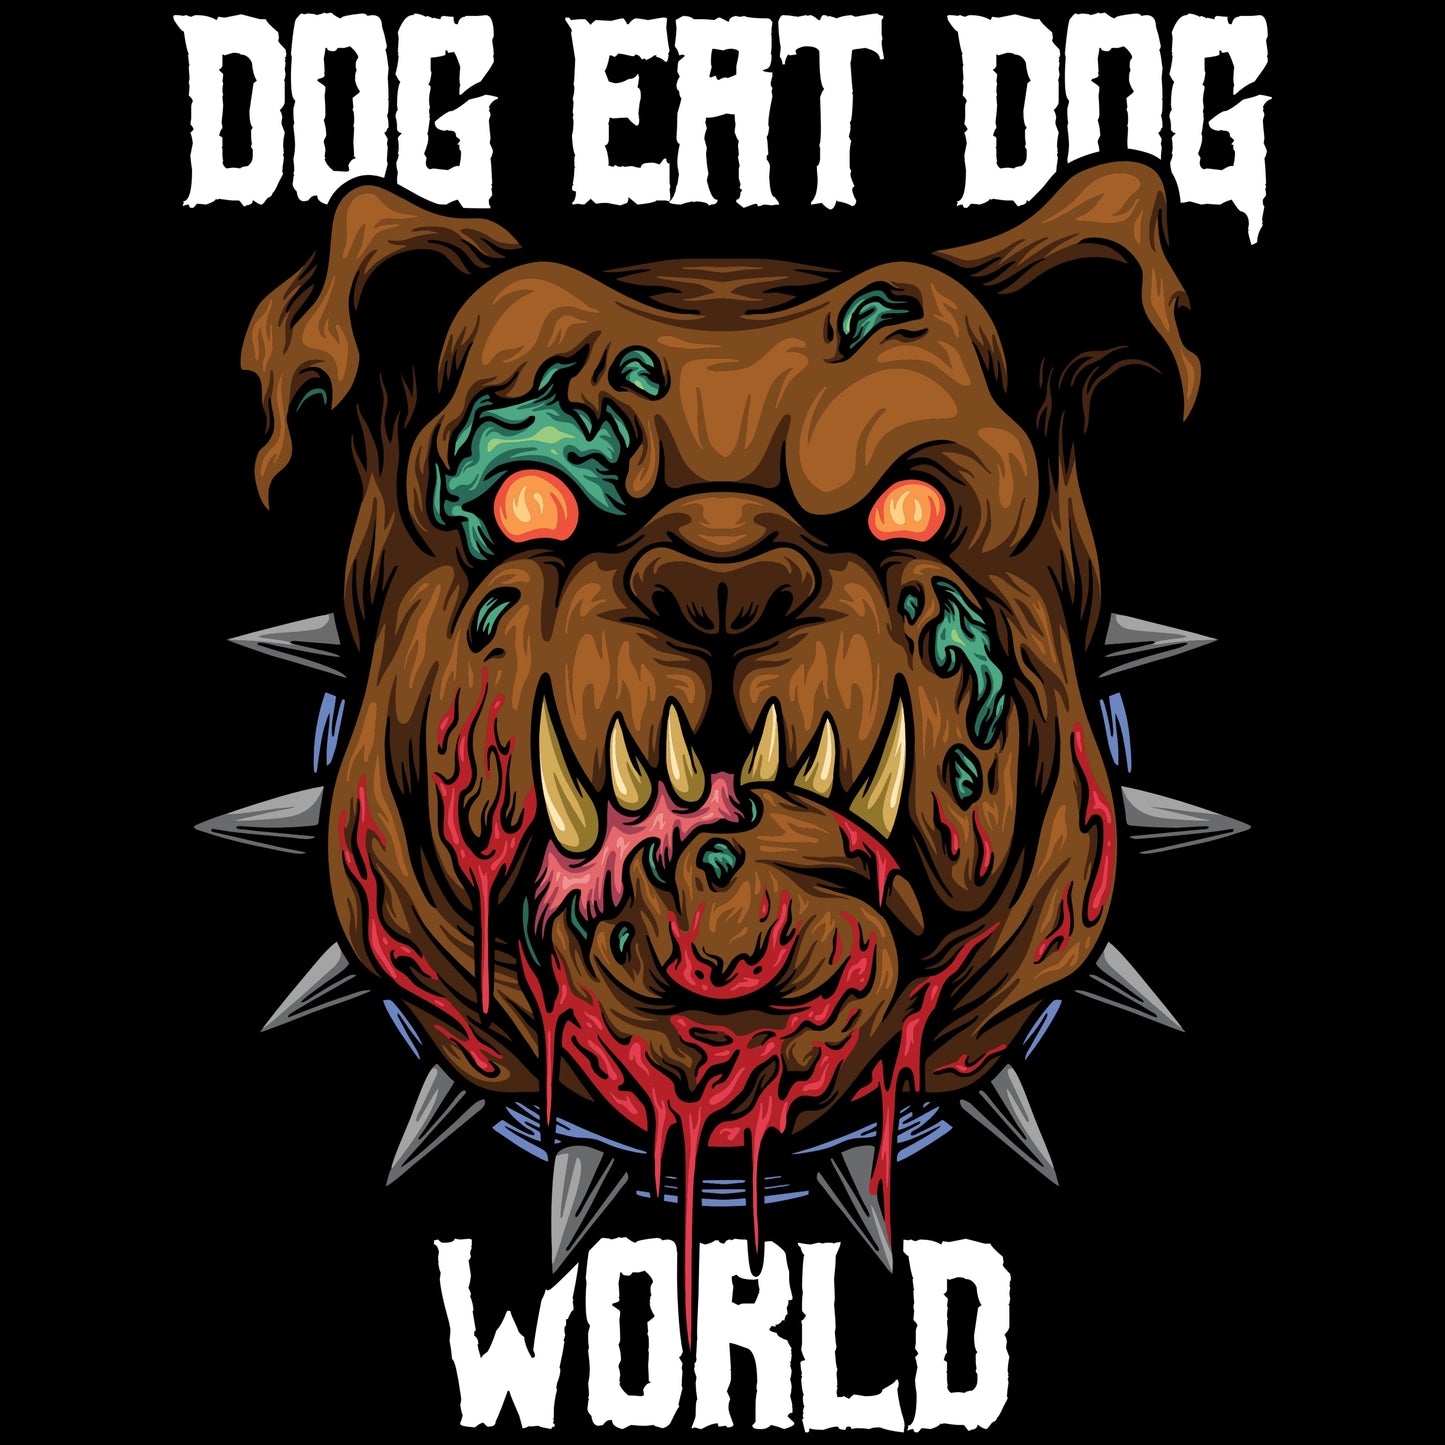 dog eat dog world [t-shirt] - ovrsze